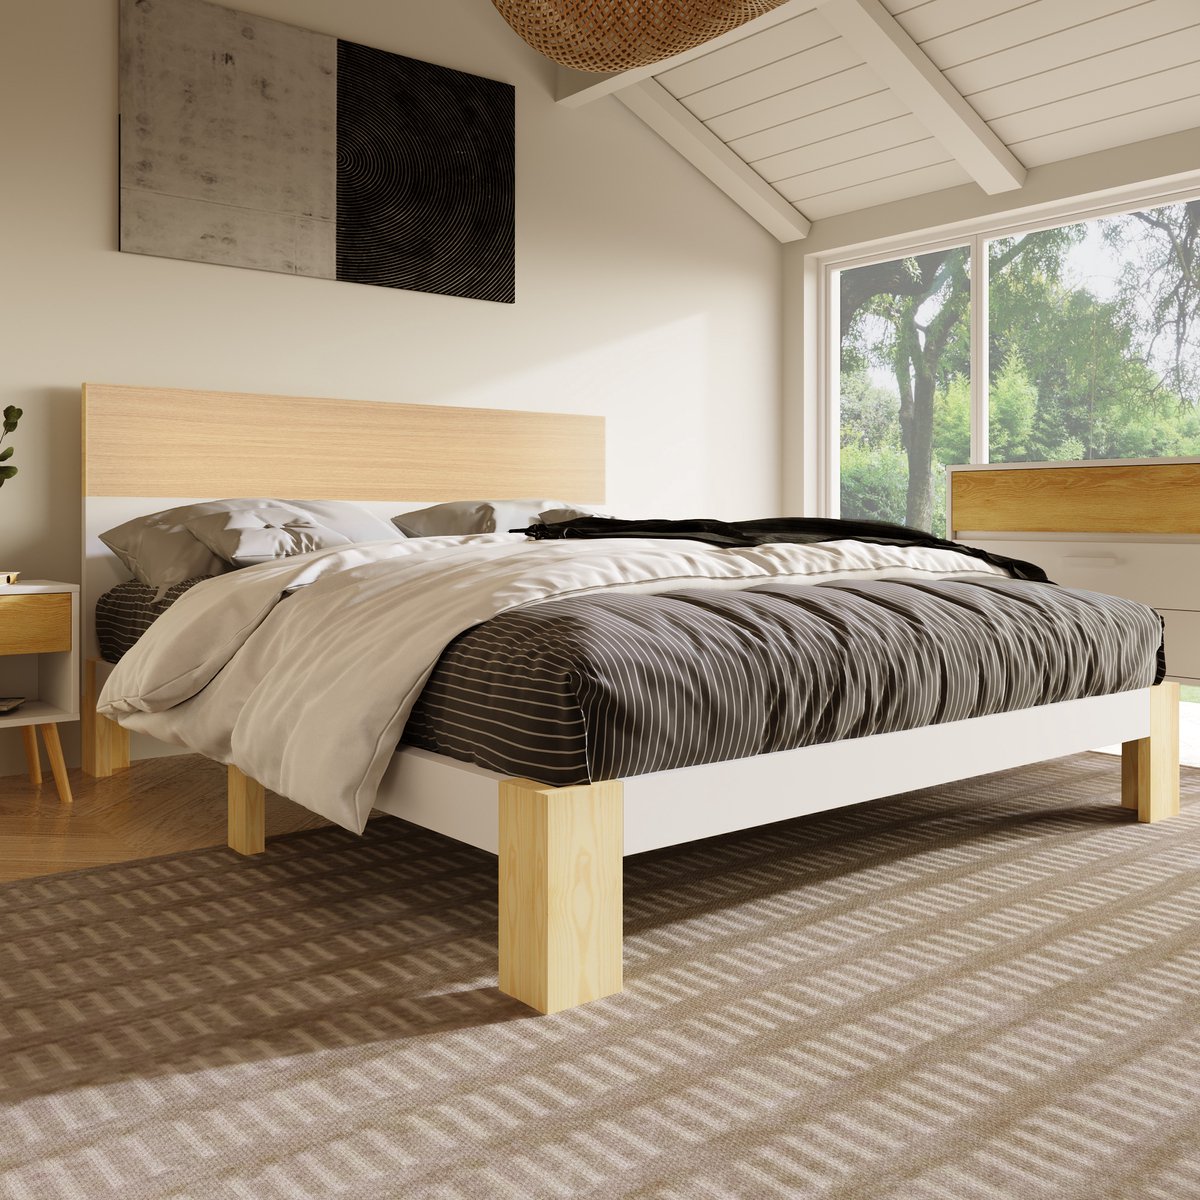 Houten bed tweepersoonsbed met hoofdeinde -Natuurlijk houten bed met lattenbodem-140x200 cm -Natuurlijk&Wit Klassieke landelijke stijl